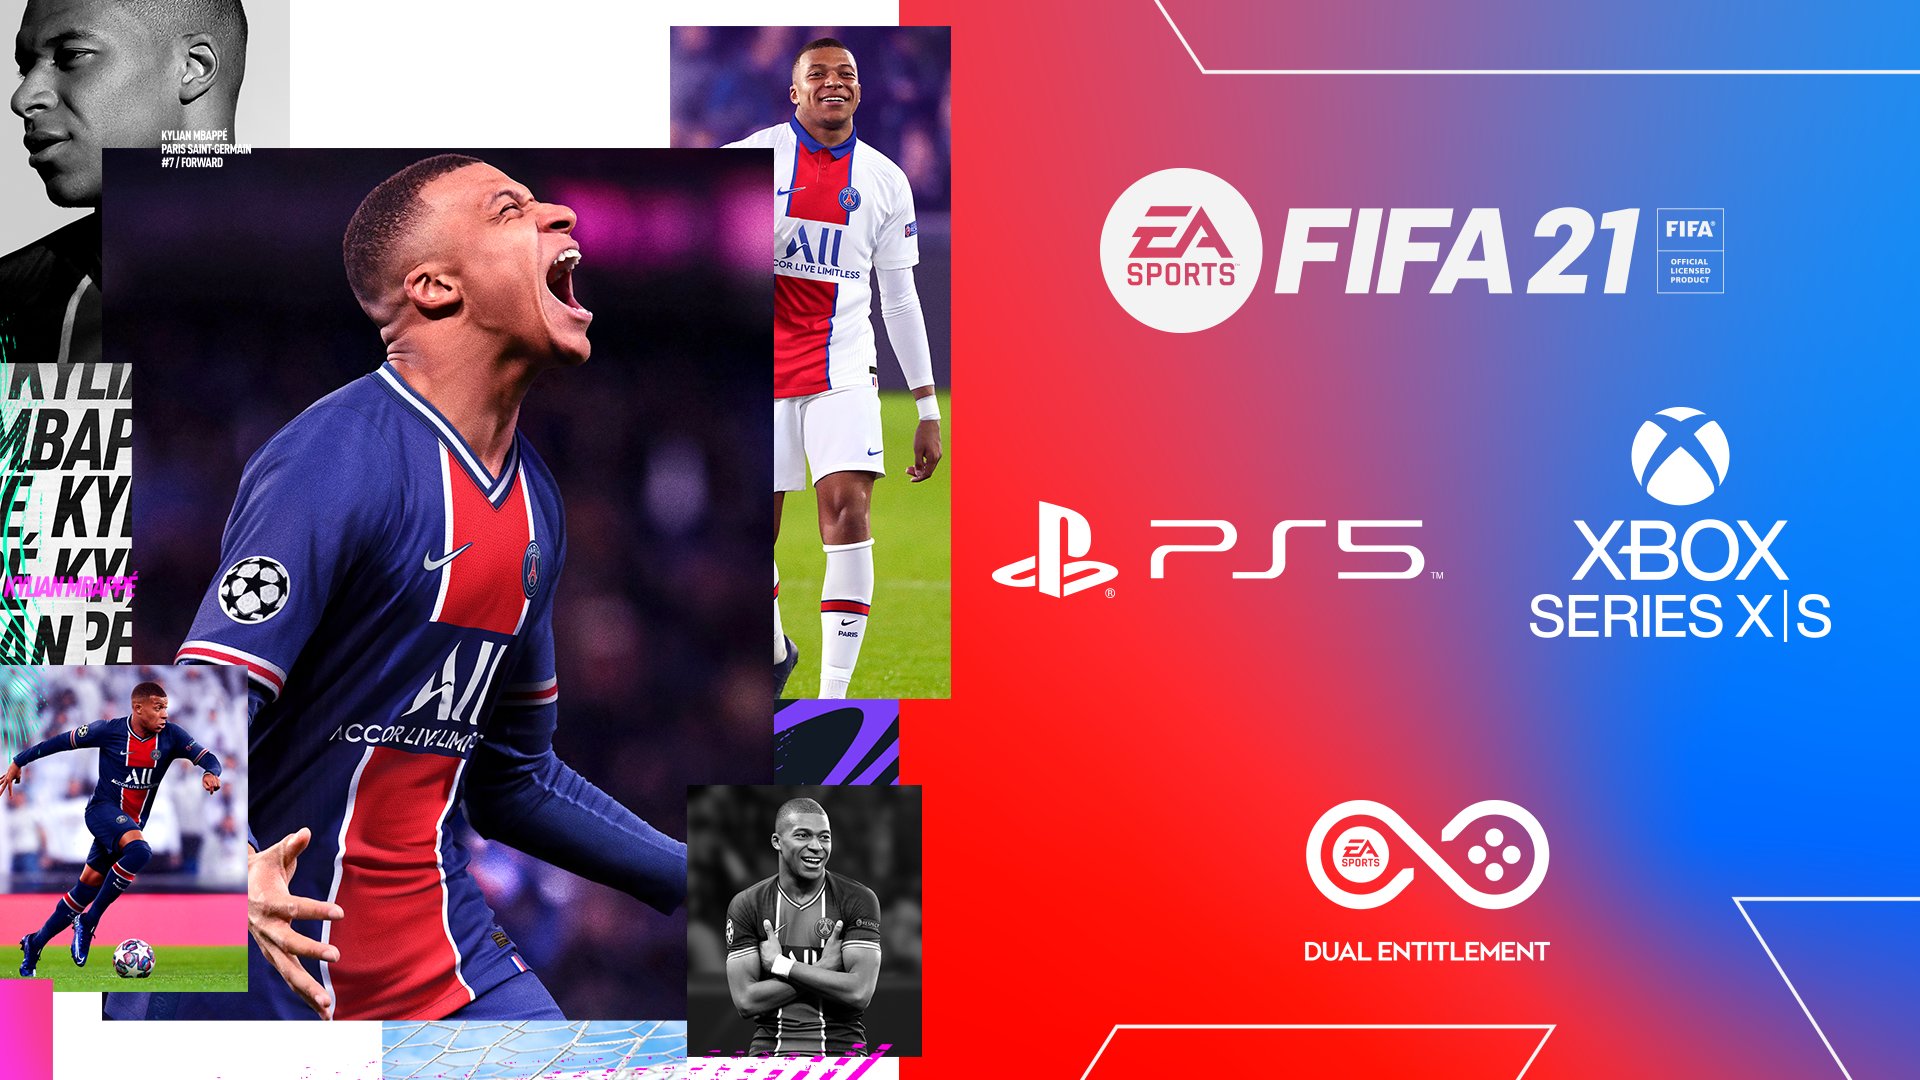 FIFA 21, PS4 - PS4 Pro - PS5